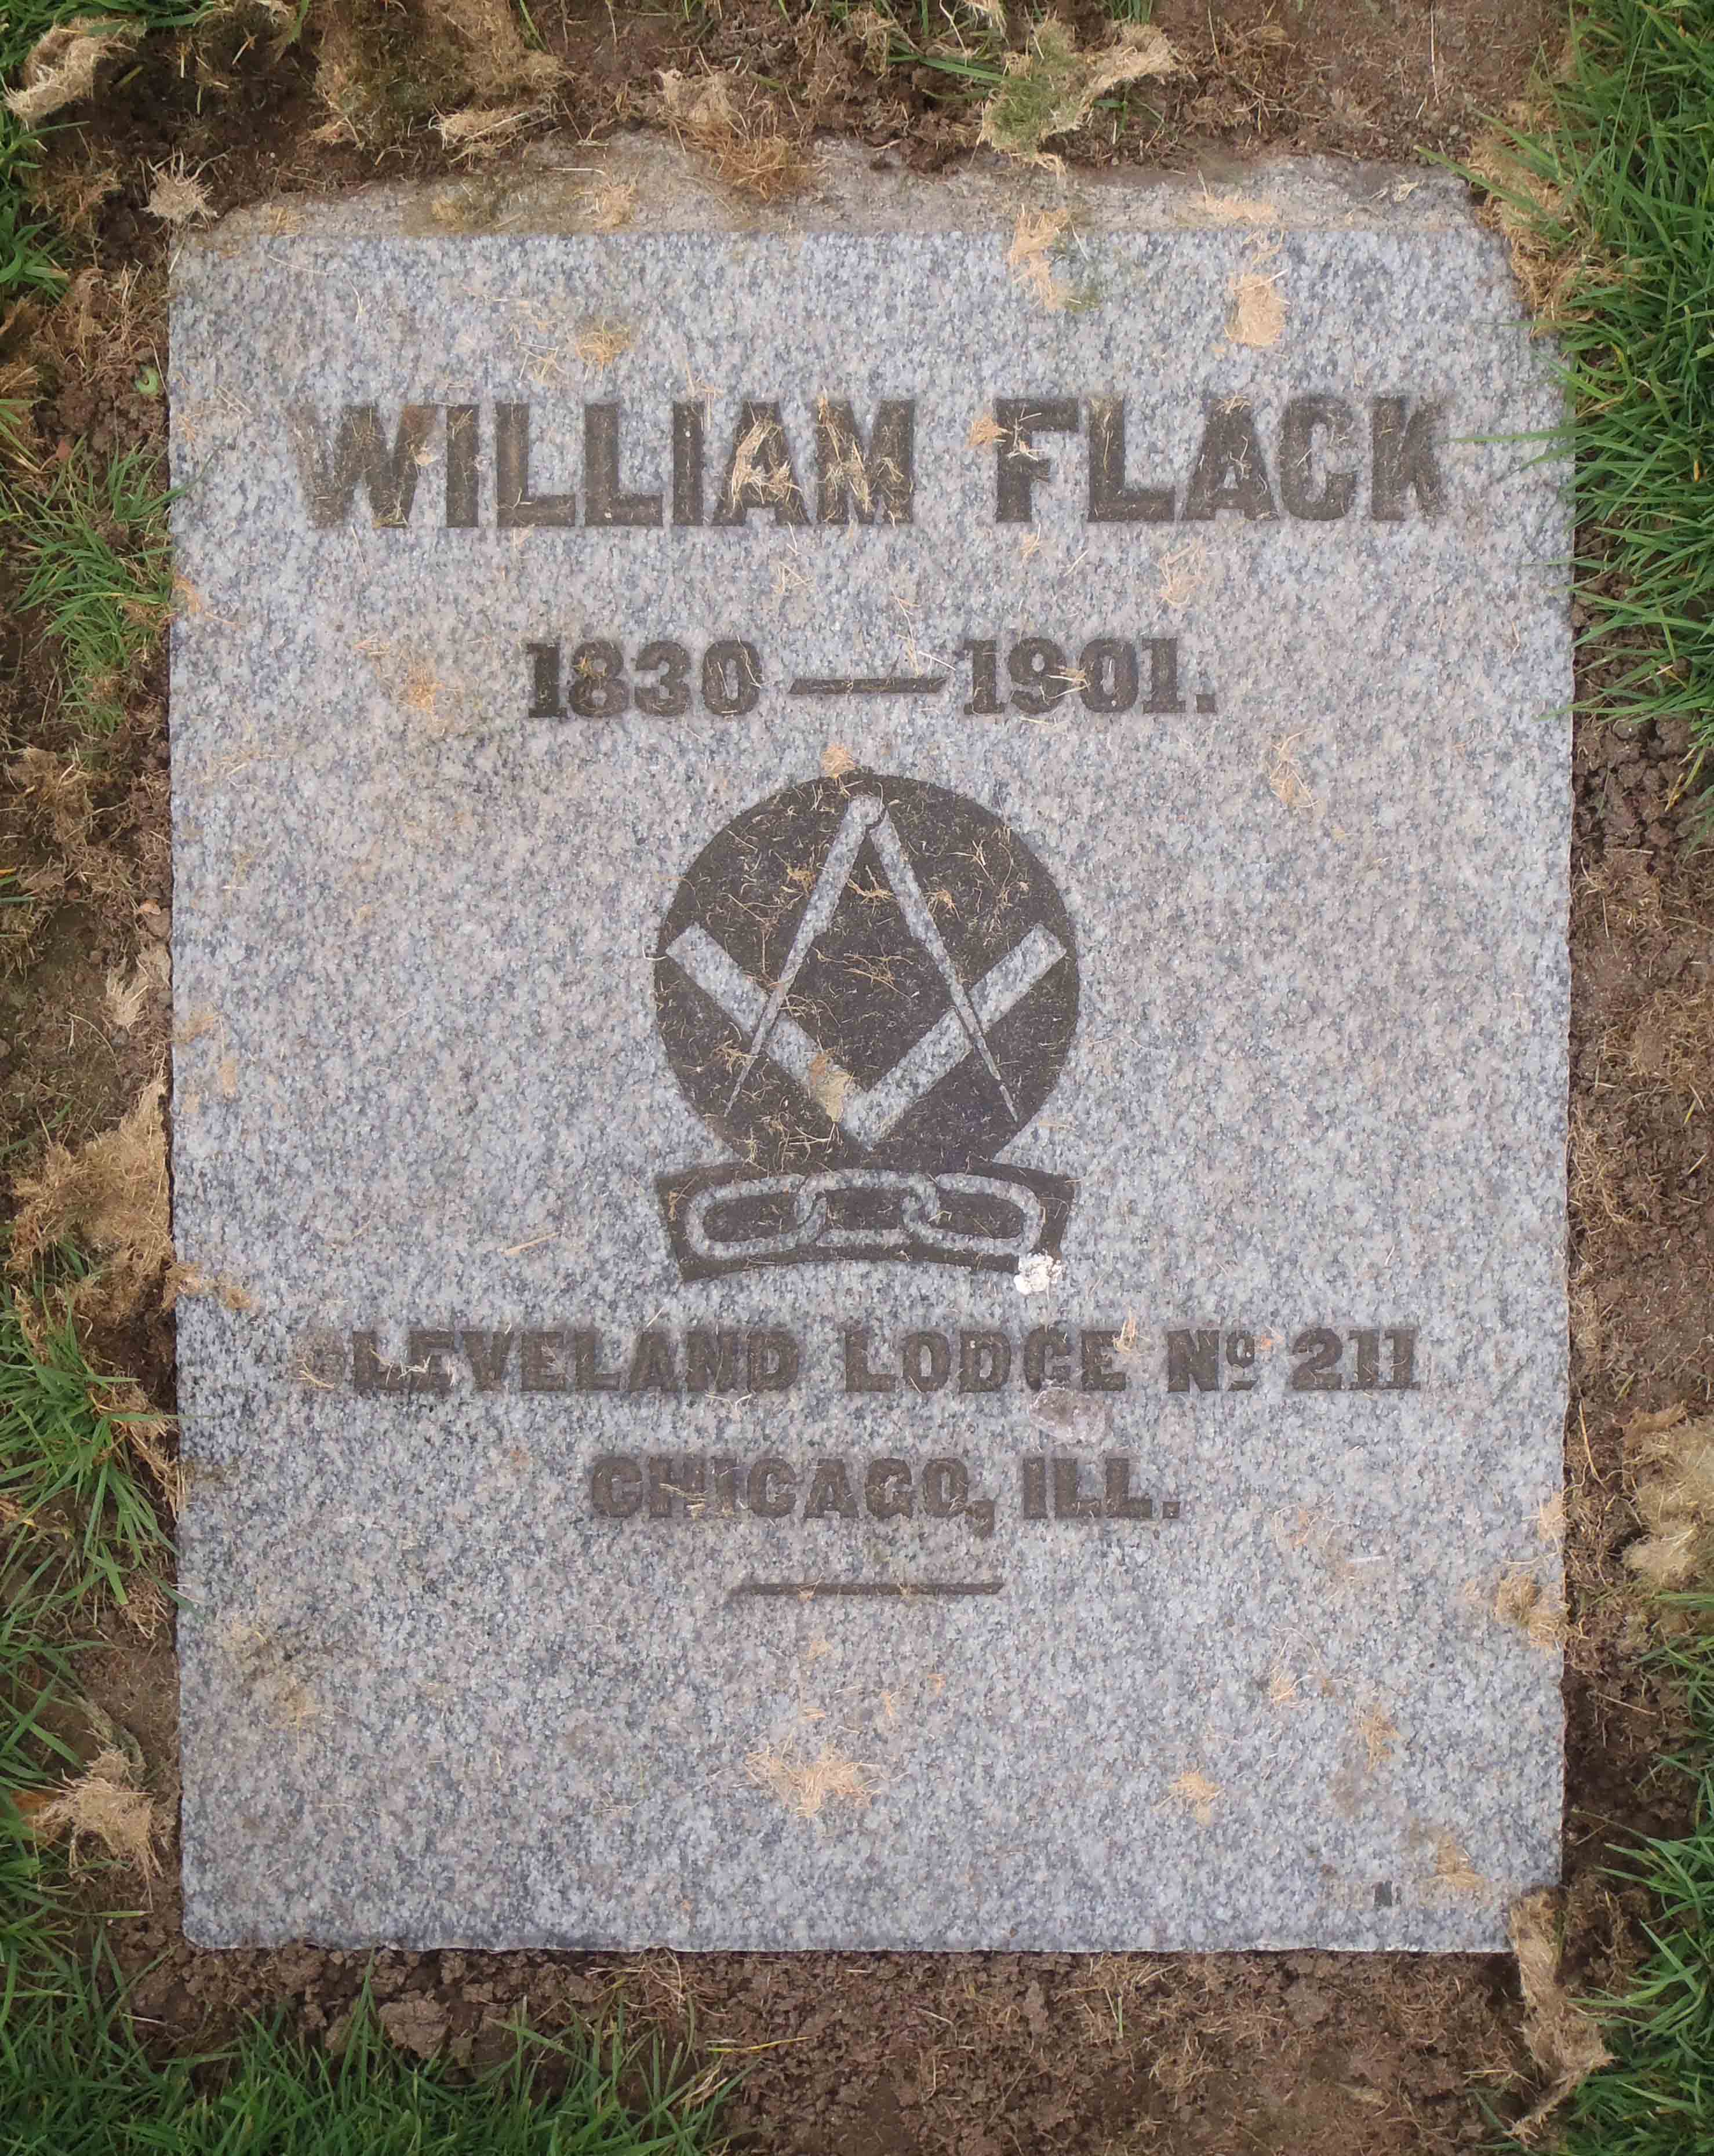 William Flack gravestone